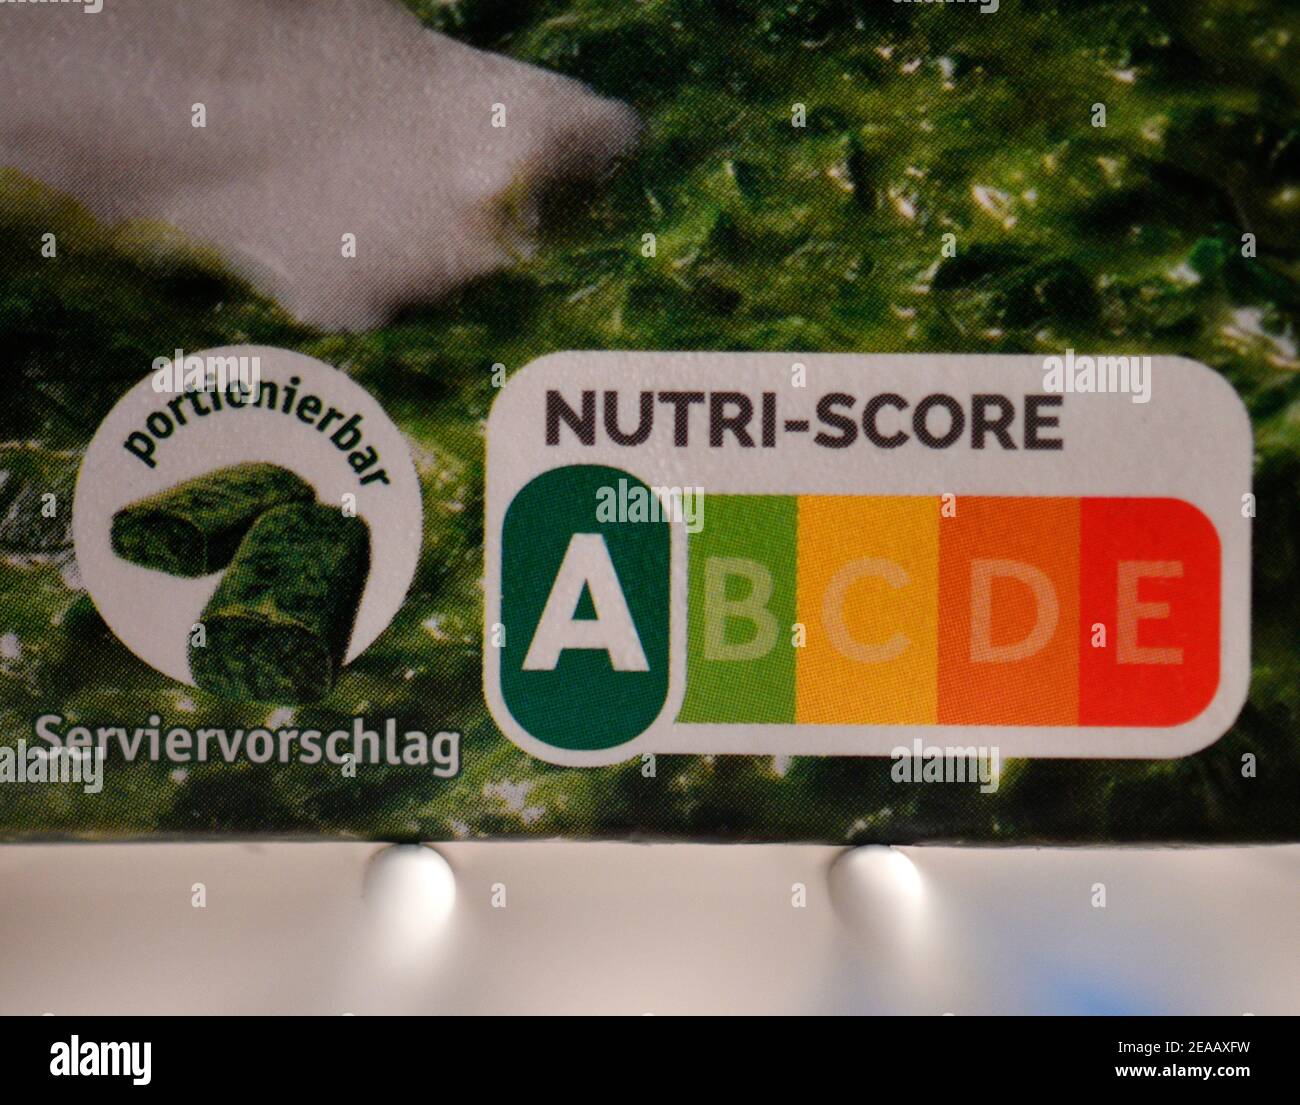 Label NUTRI-SCORE, Nährwertkennzeichnungssystem, deutschlandweite Einführung ab November 2020, hier auf einer Packung Rahmspinat aus Iglo, Baden-Württemberg, Deutschland Stockfoto